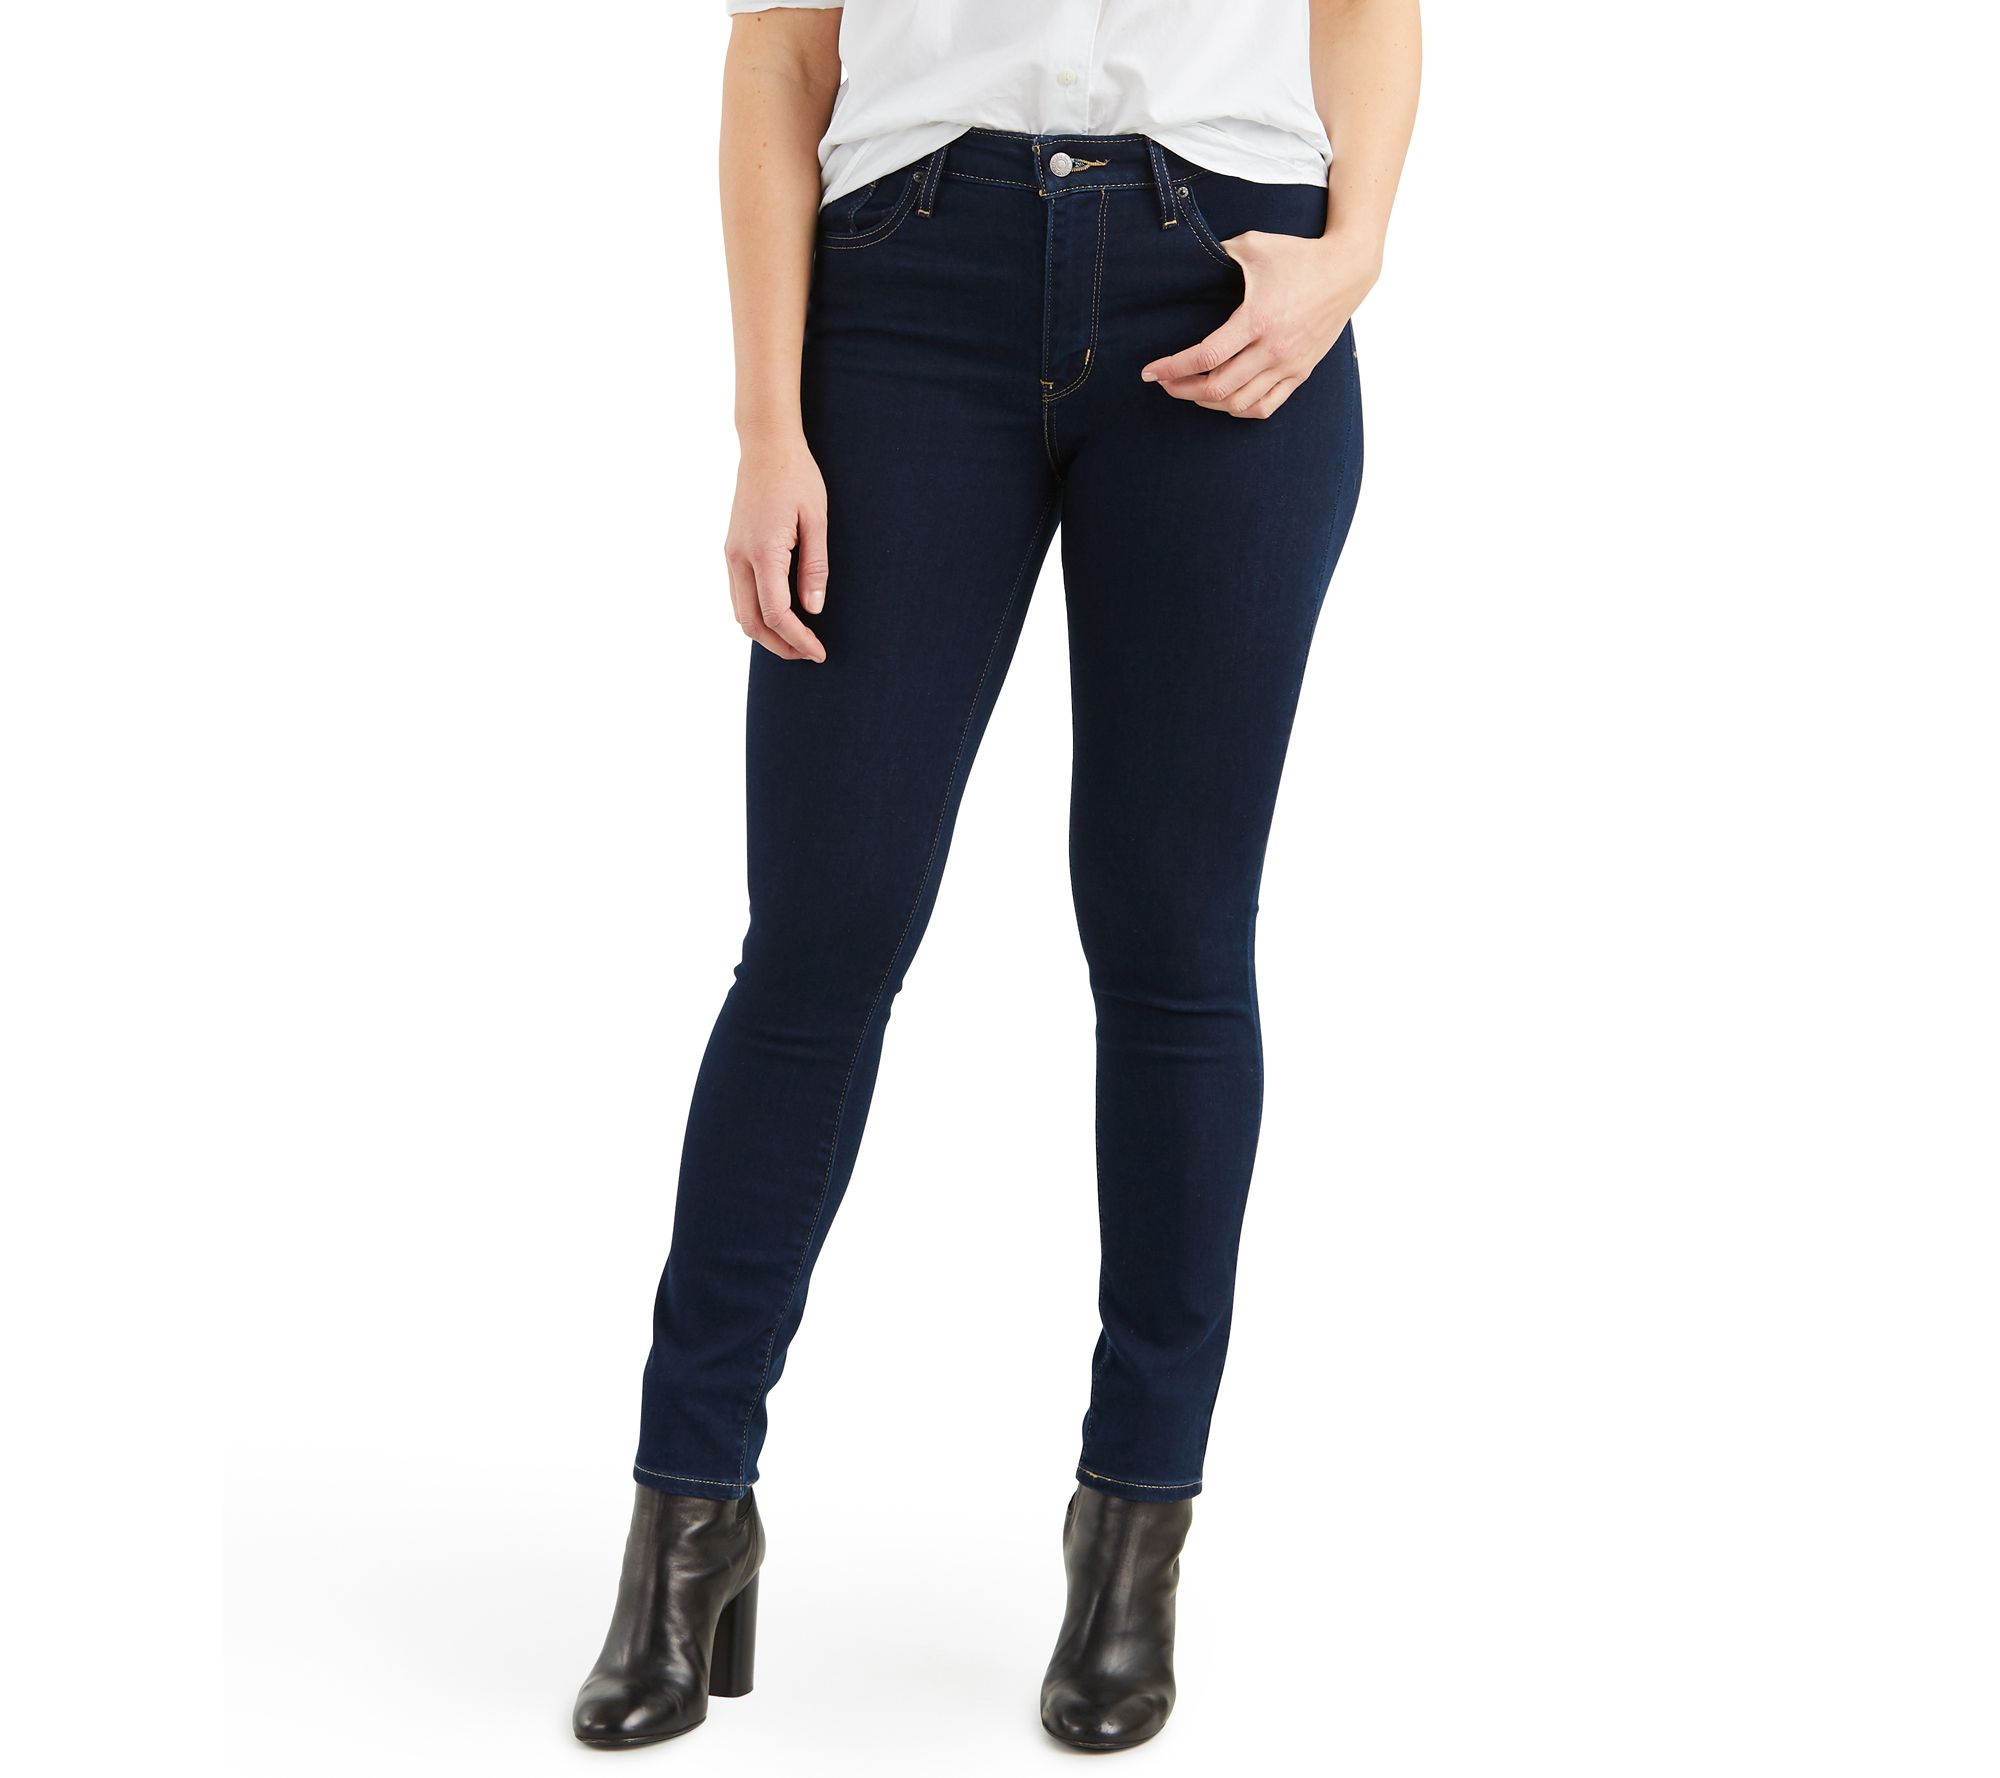 Levi's 721 High Rise Skinny Jeans - QVC.com